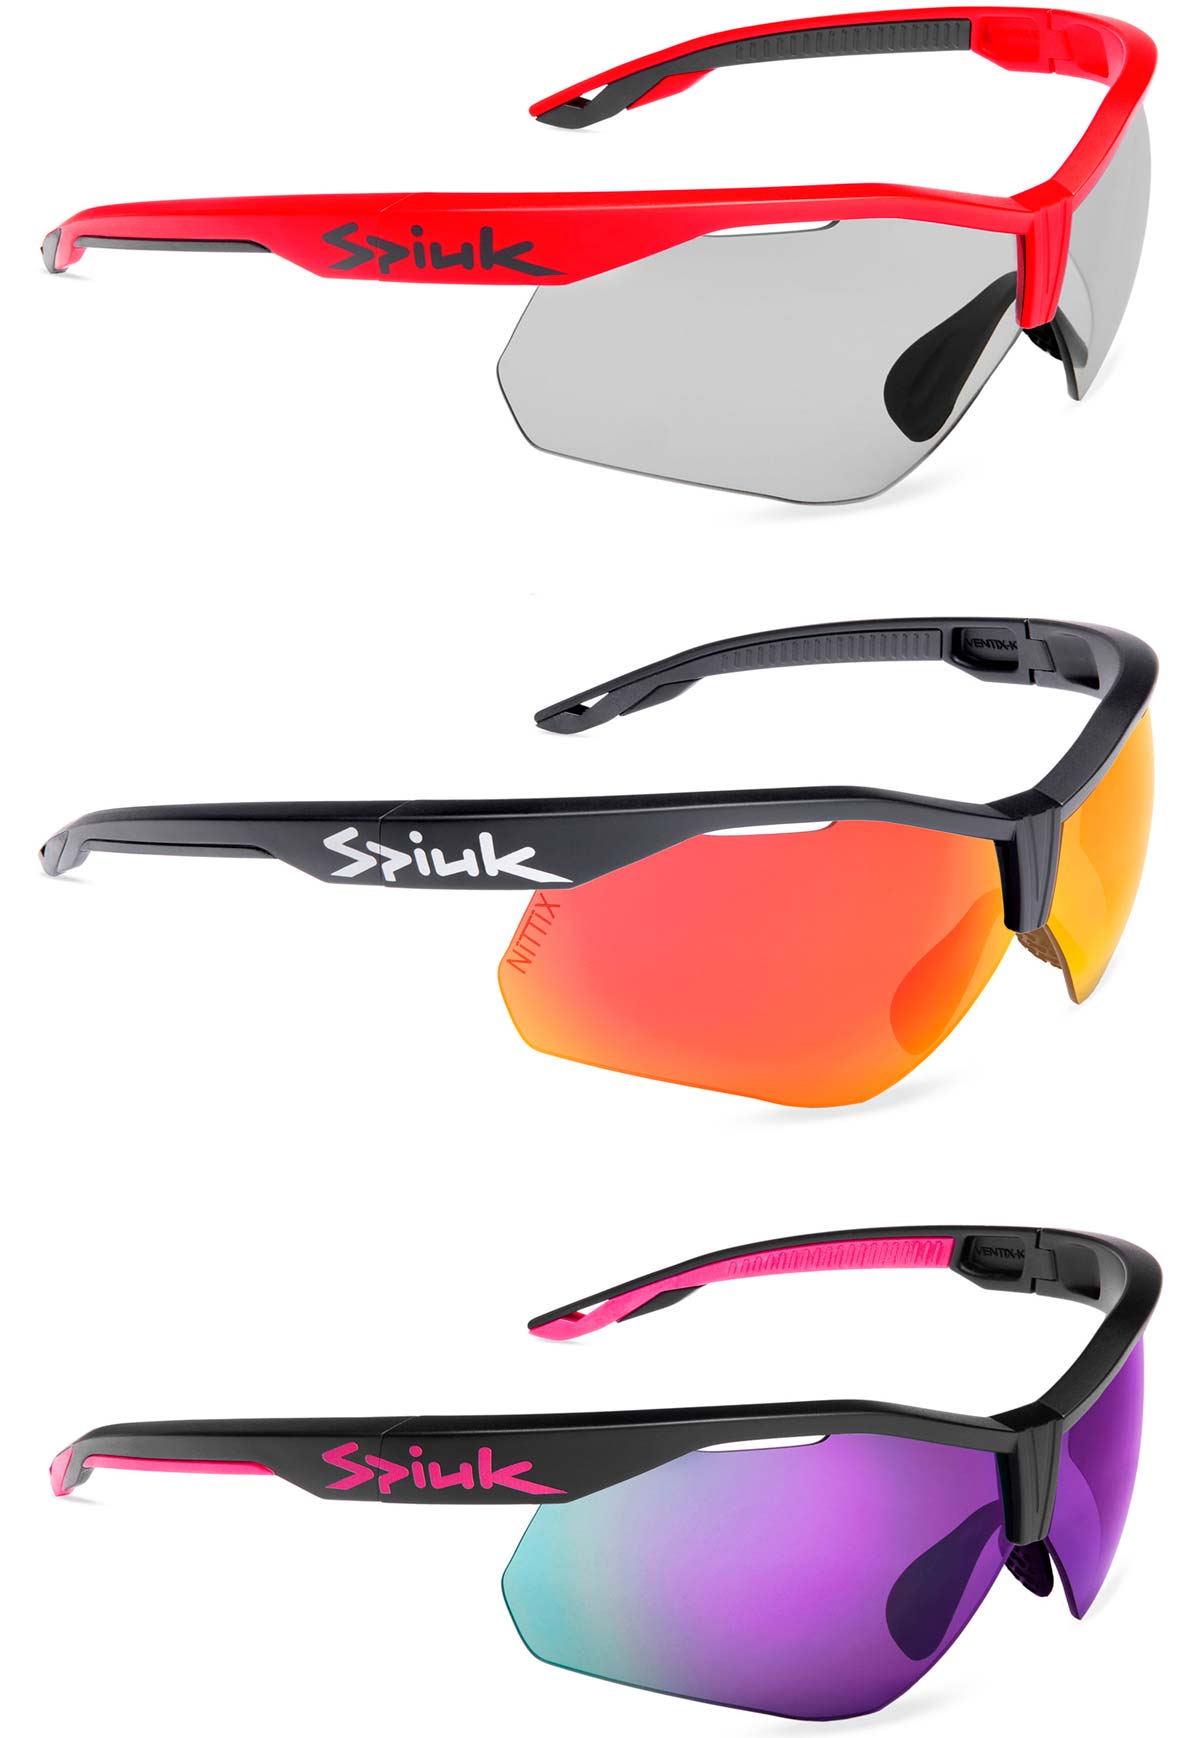 En TodoMountainBike: Spiuk Ventix-K, la versión resistente de las gafas más populares de la marca